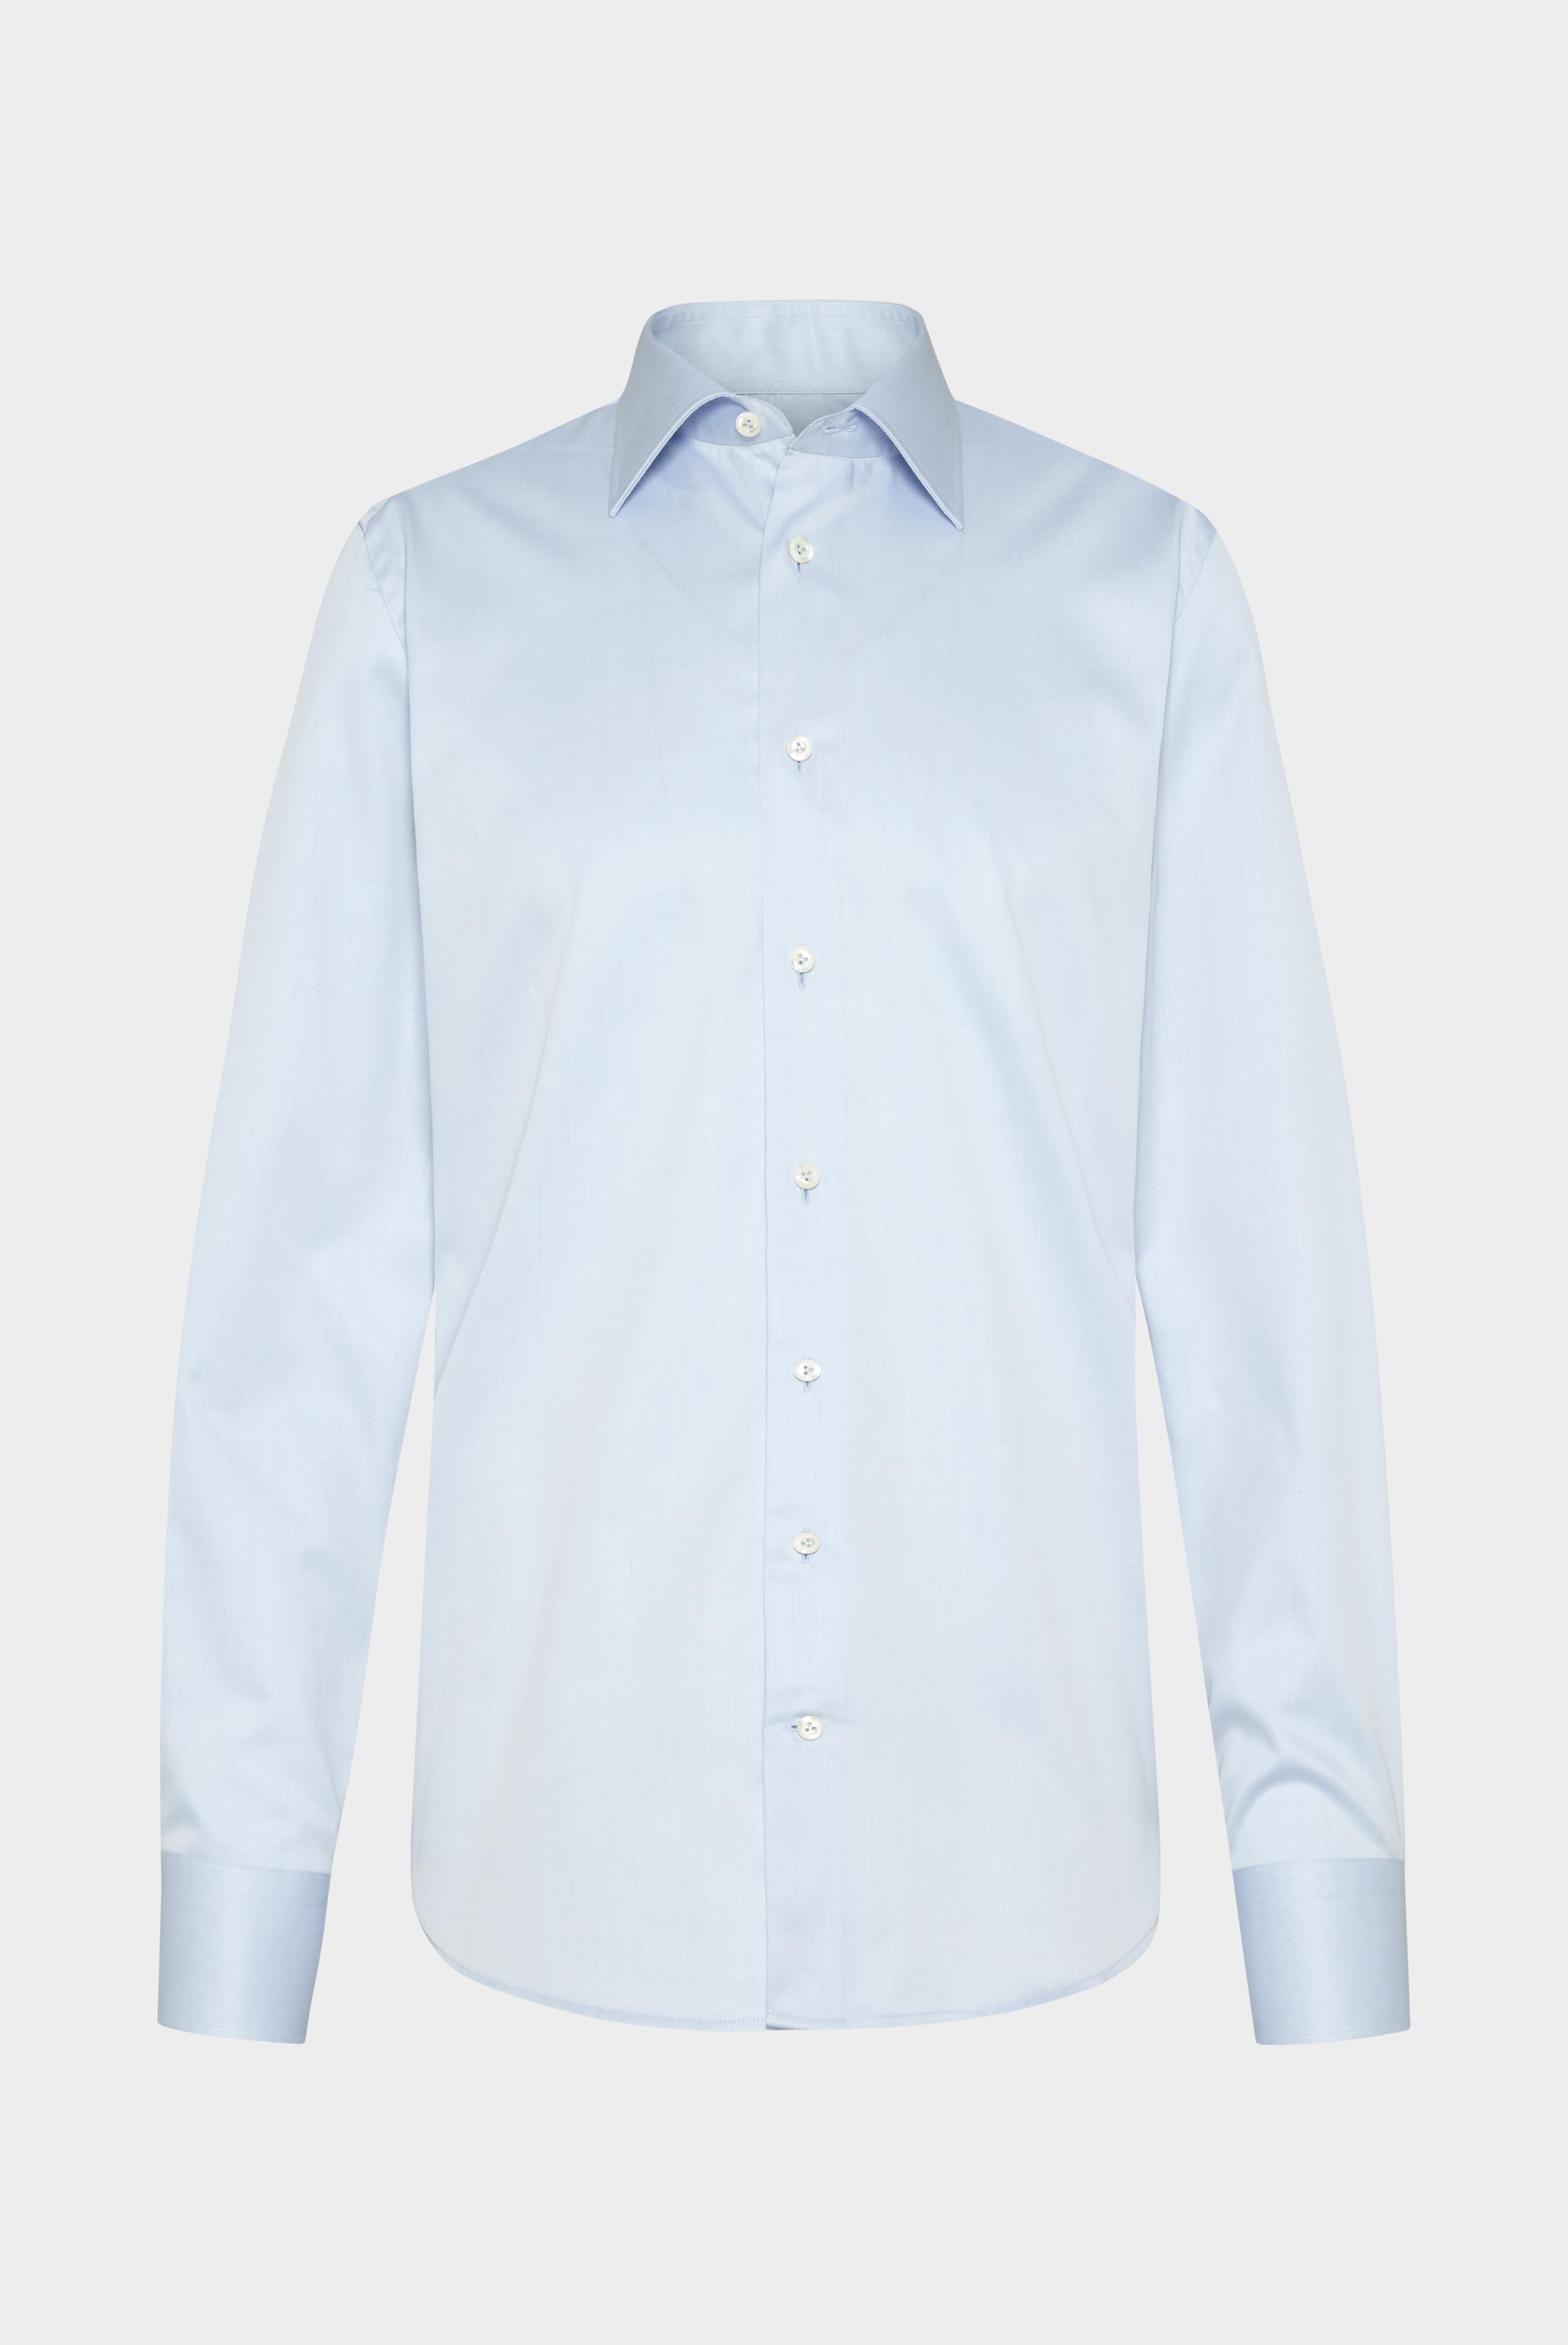 Bügelleichte Hemden+Bügelfreies Twill Hemd Comfort Fit+20.2046.BQ.132241.720.45